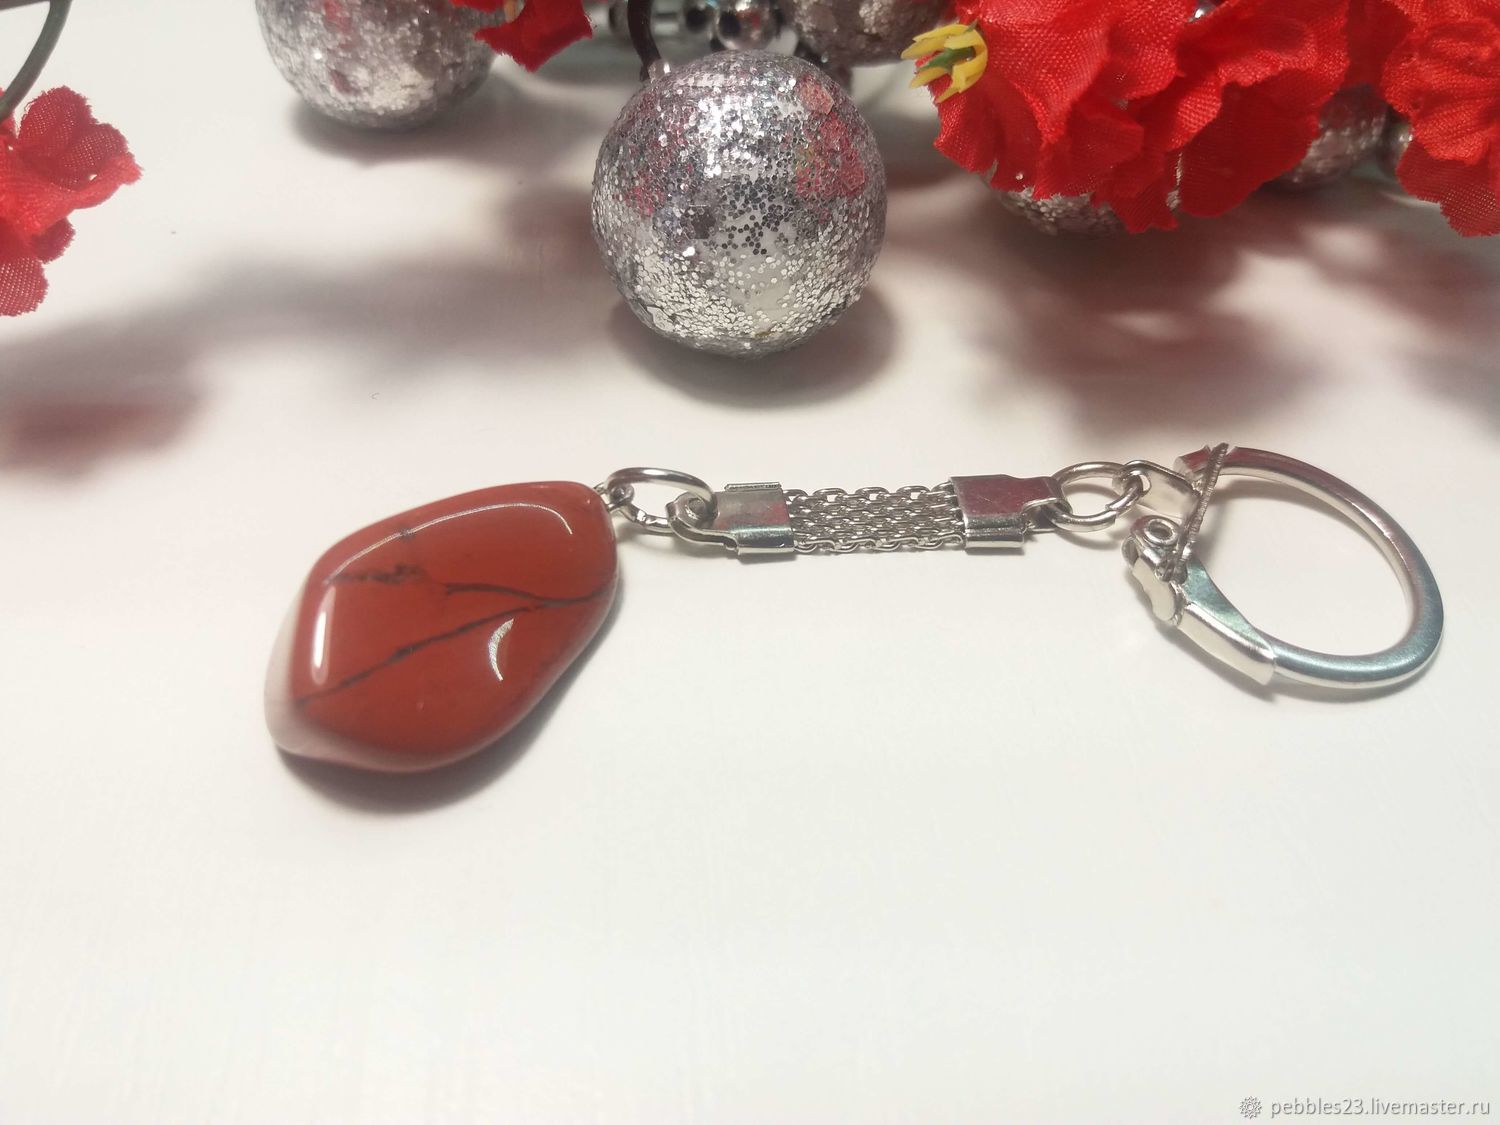 Брелок для ключей из Яшмы красной, натуральный камень